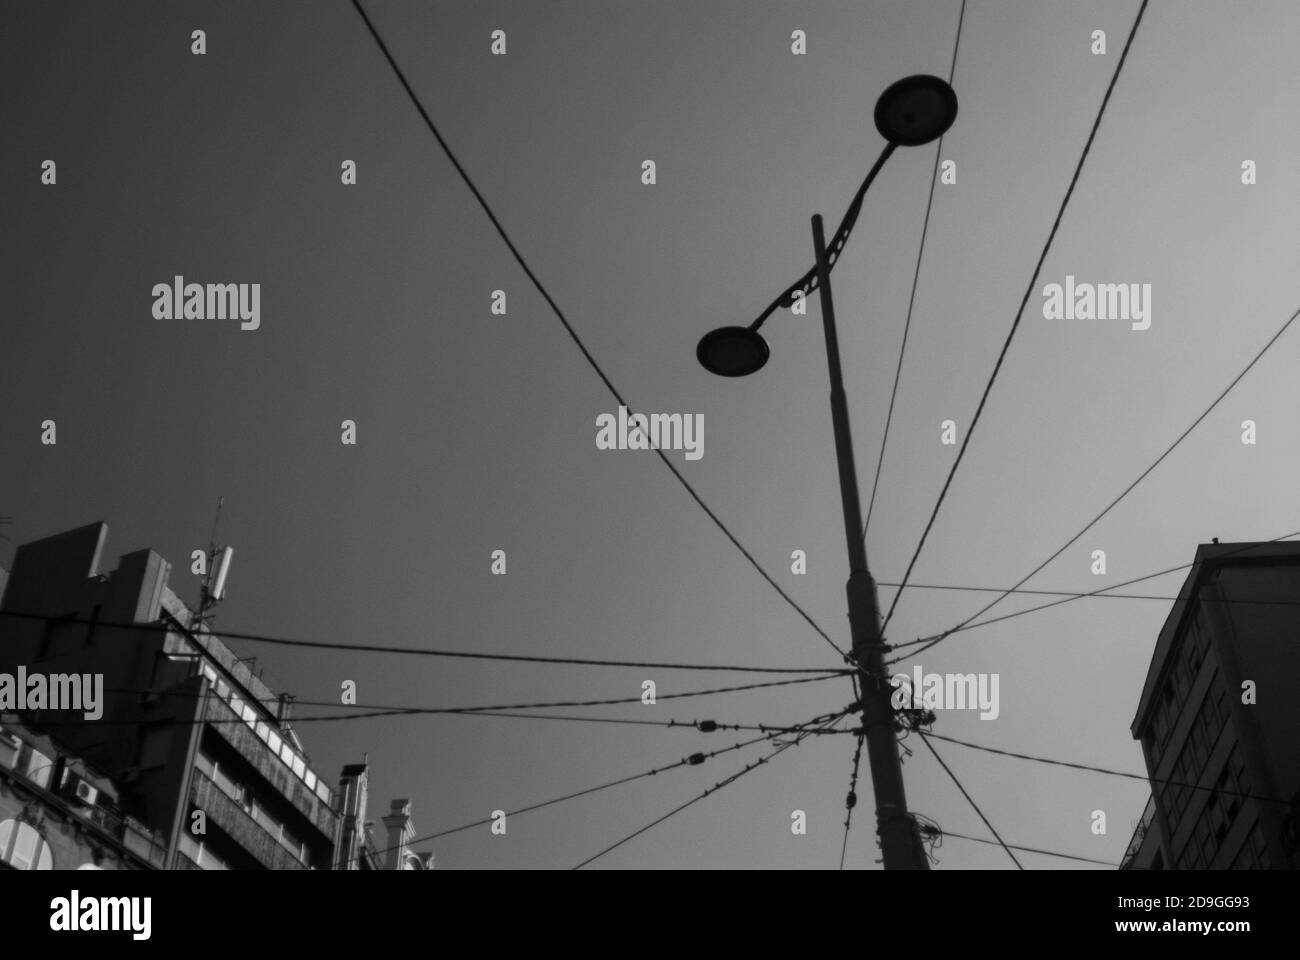 Immagine in scala di grigi di un palo per illuminazione stradale con fili Foto Stock